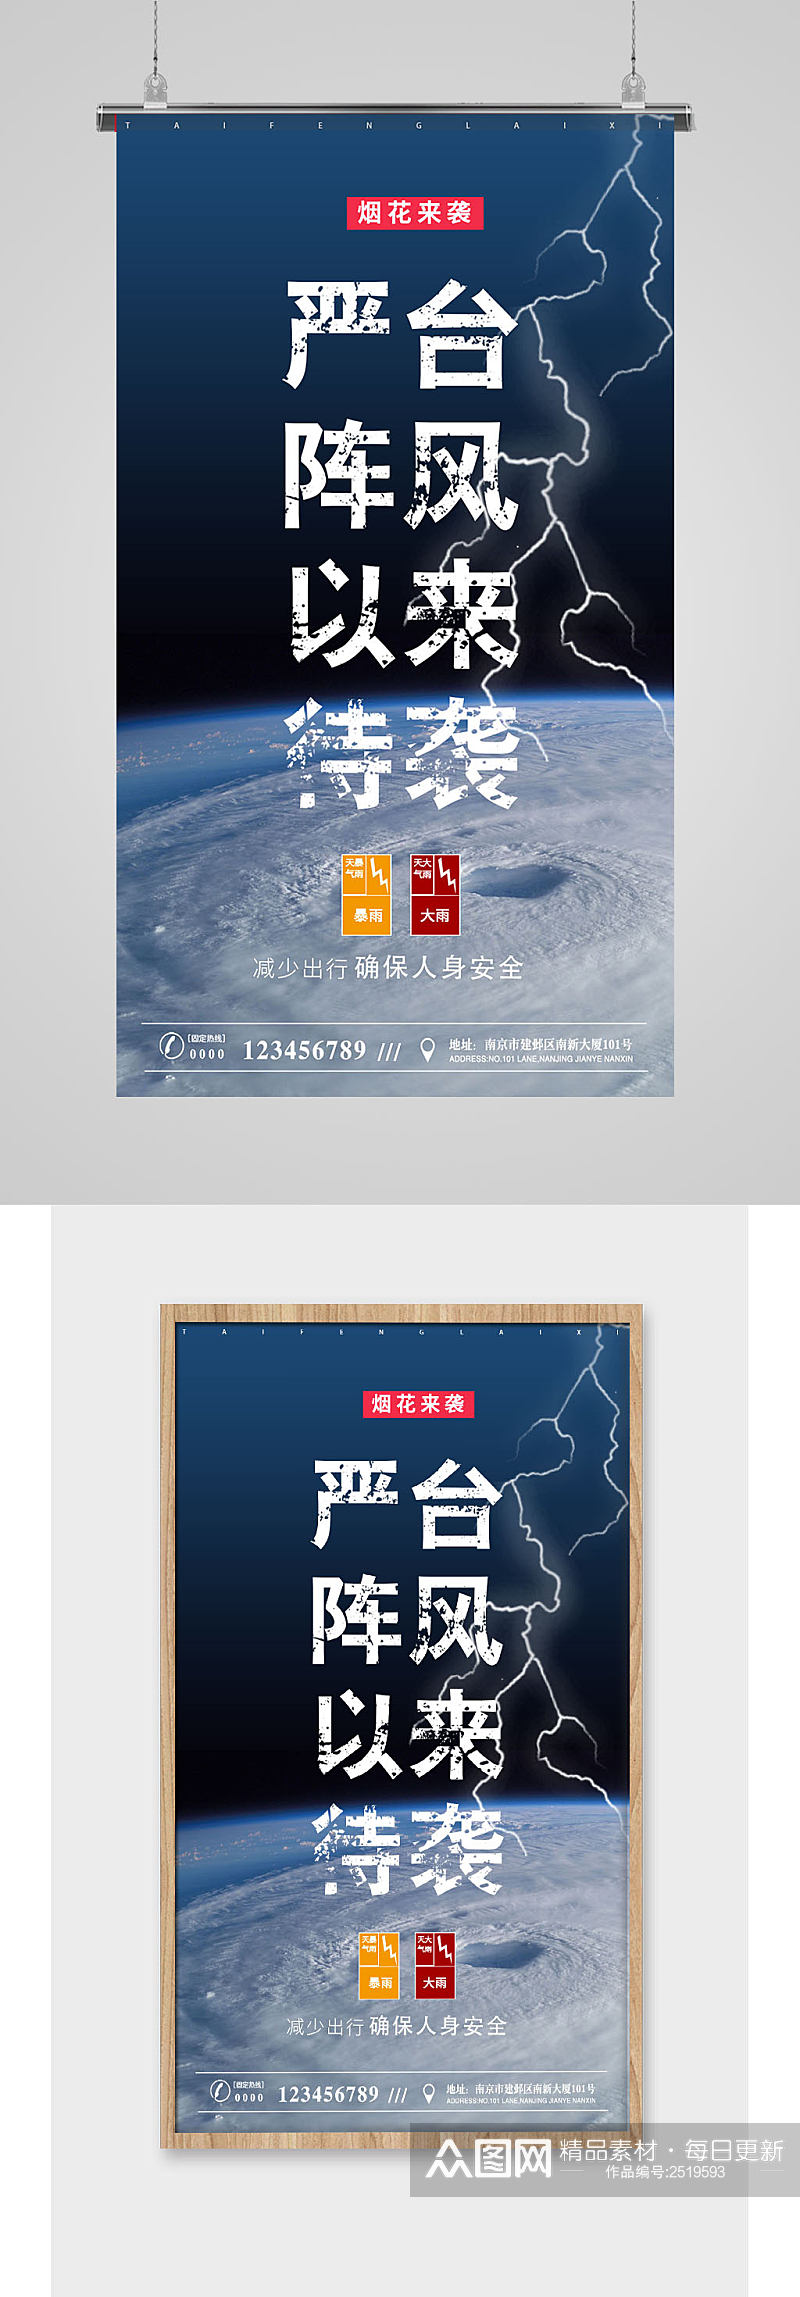 预防台风注意安全宣传海报素材